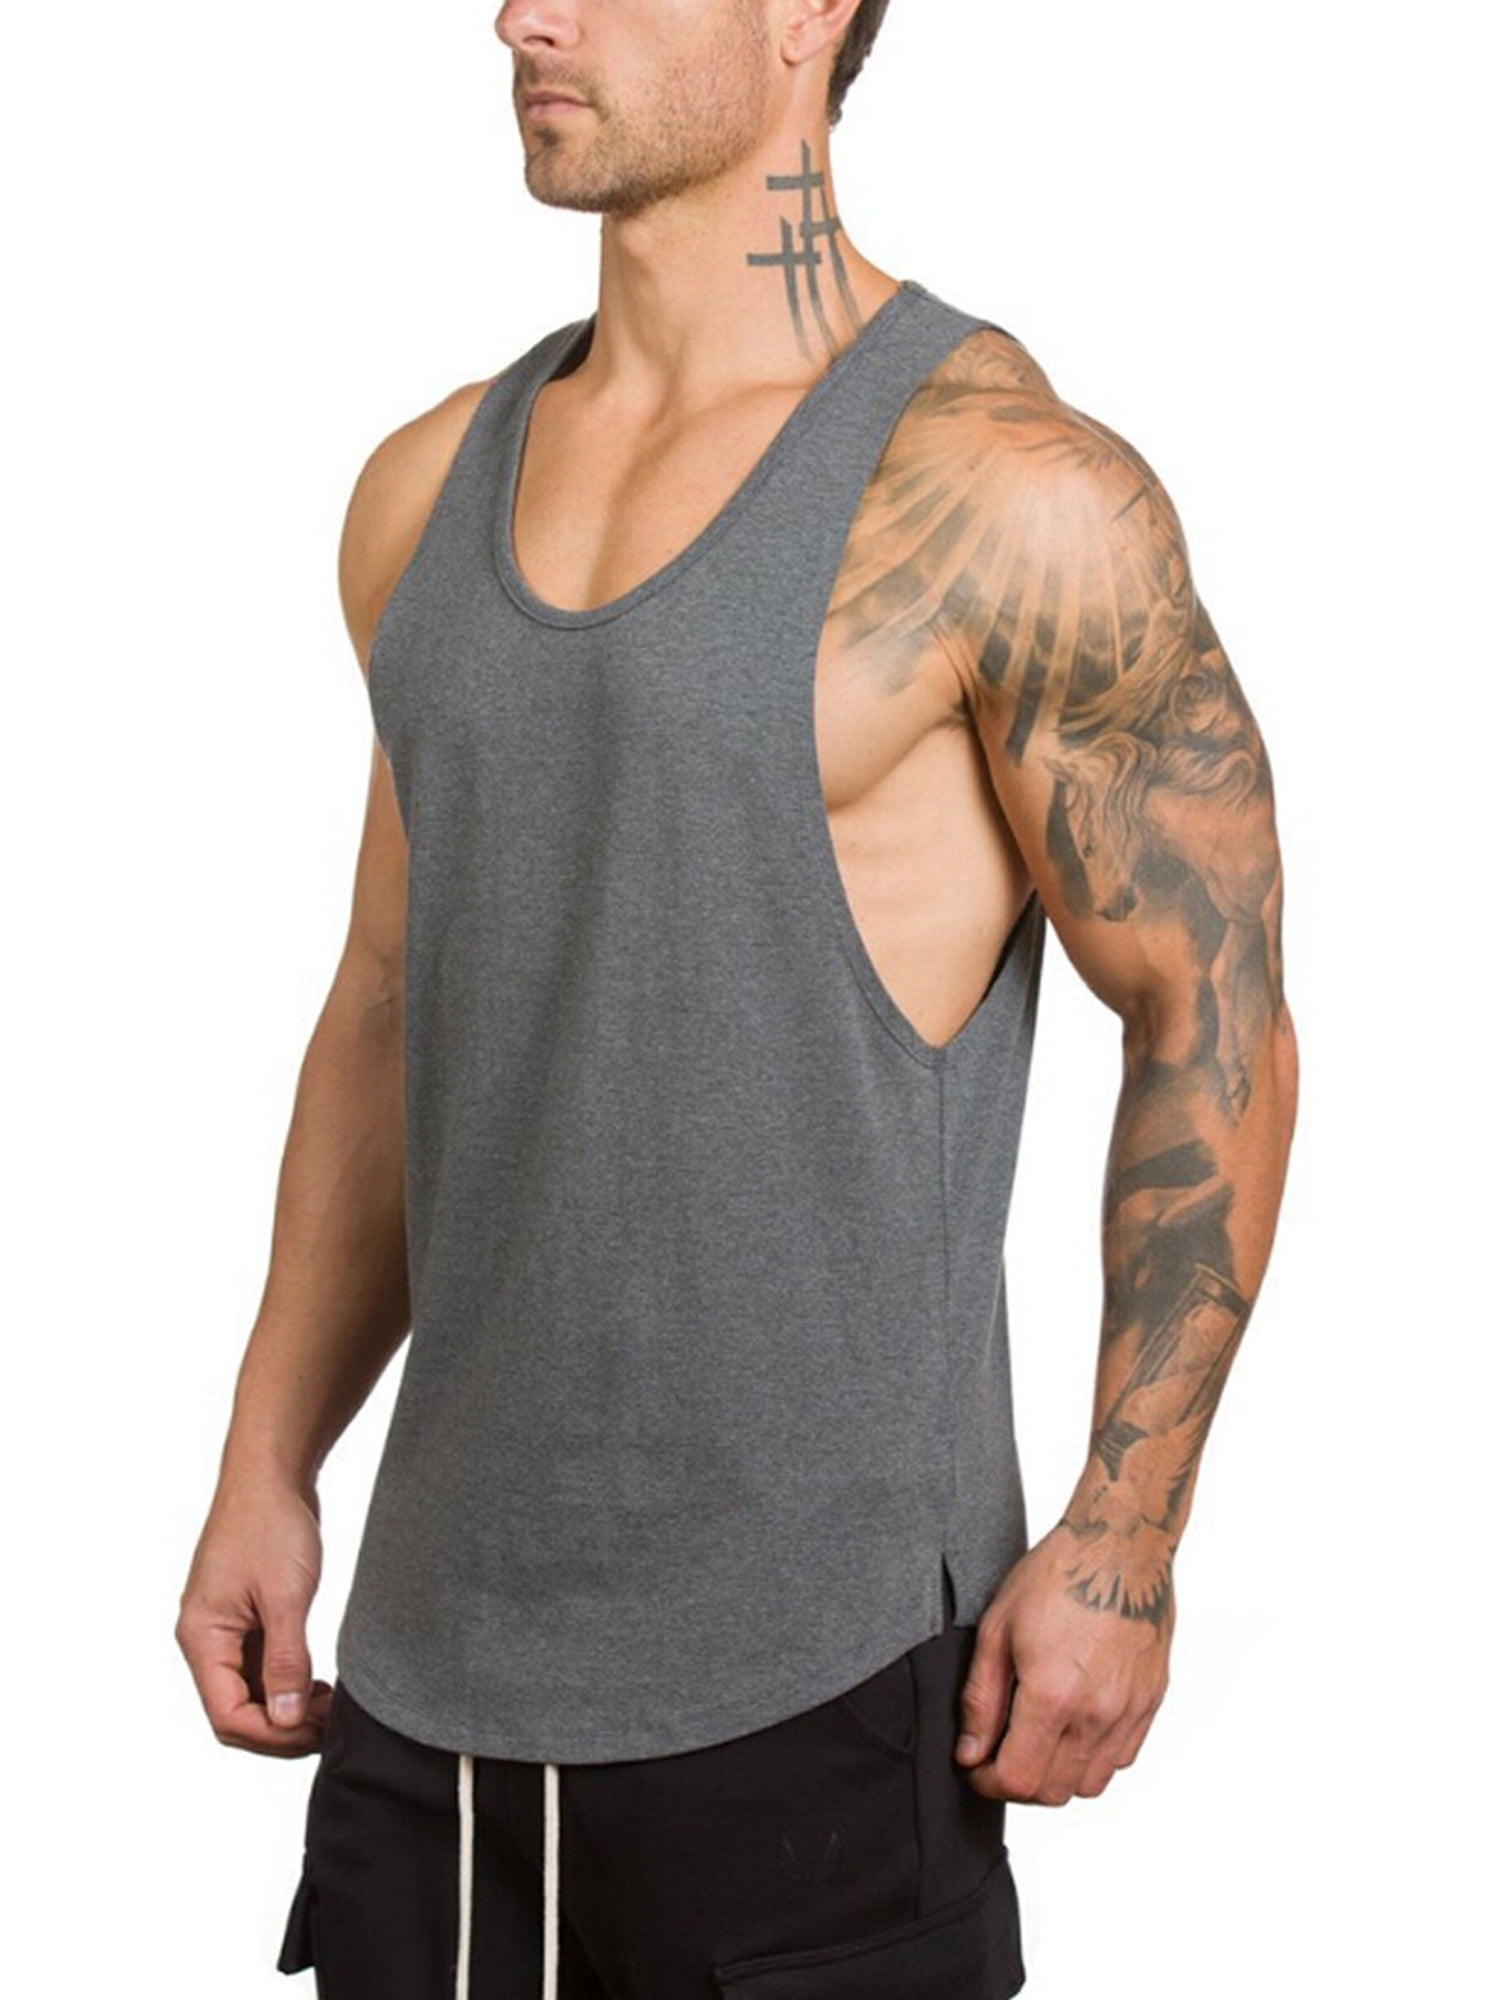 power, body building stringer vest muscle strength 